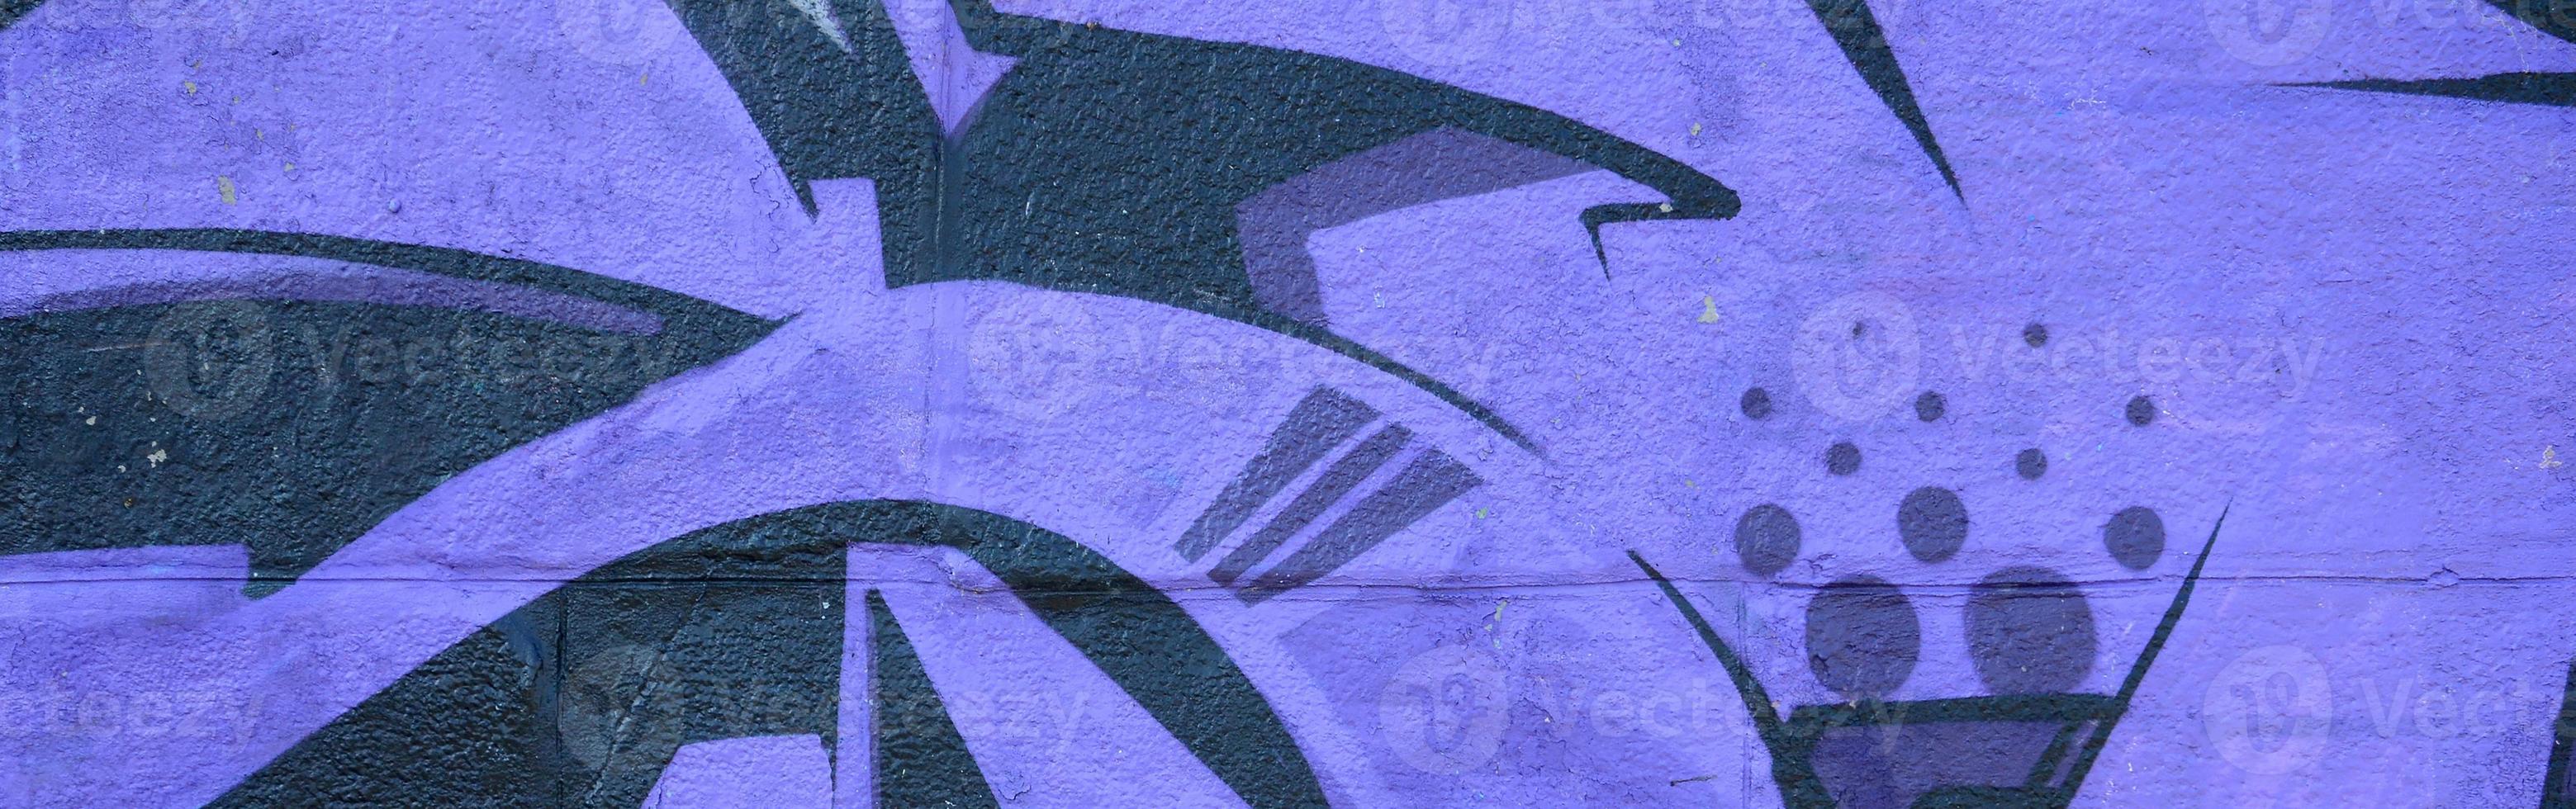 Fragment von Graffiti-Zeichnungen. Die alte Wand ist mit Farbflecken im Stil der Straßenkunstkultur dekoriert. farbige Hintergrundtextur in violetten Tönen foto